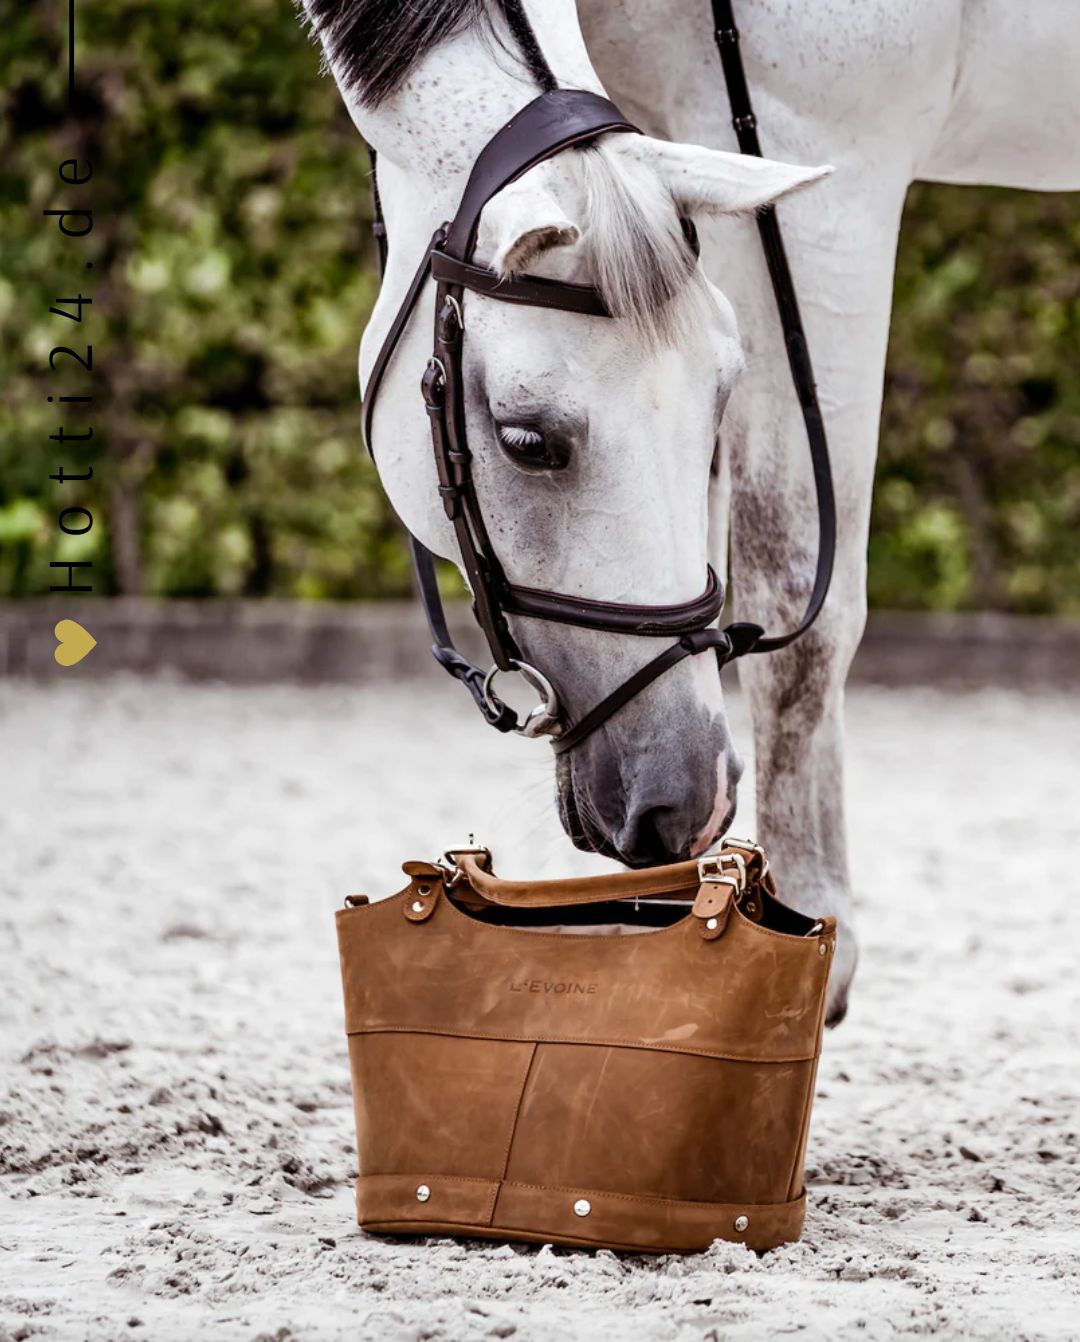 L'Evoine »Pferde Putztasche Le Baquet Cognac Braun, ist nicht nur praktisch, sondern auch ein luxuriöses Statement für jeden Pferdebesitzer. Hergestellt aus feinstem 100 % Rindsleder und exklusiv handgefertigt in Deutschland. Artikelnummer 201le200 erhältlich bei www.Hotti24.de - Tasche mit Pferd